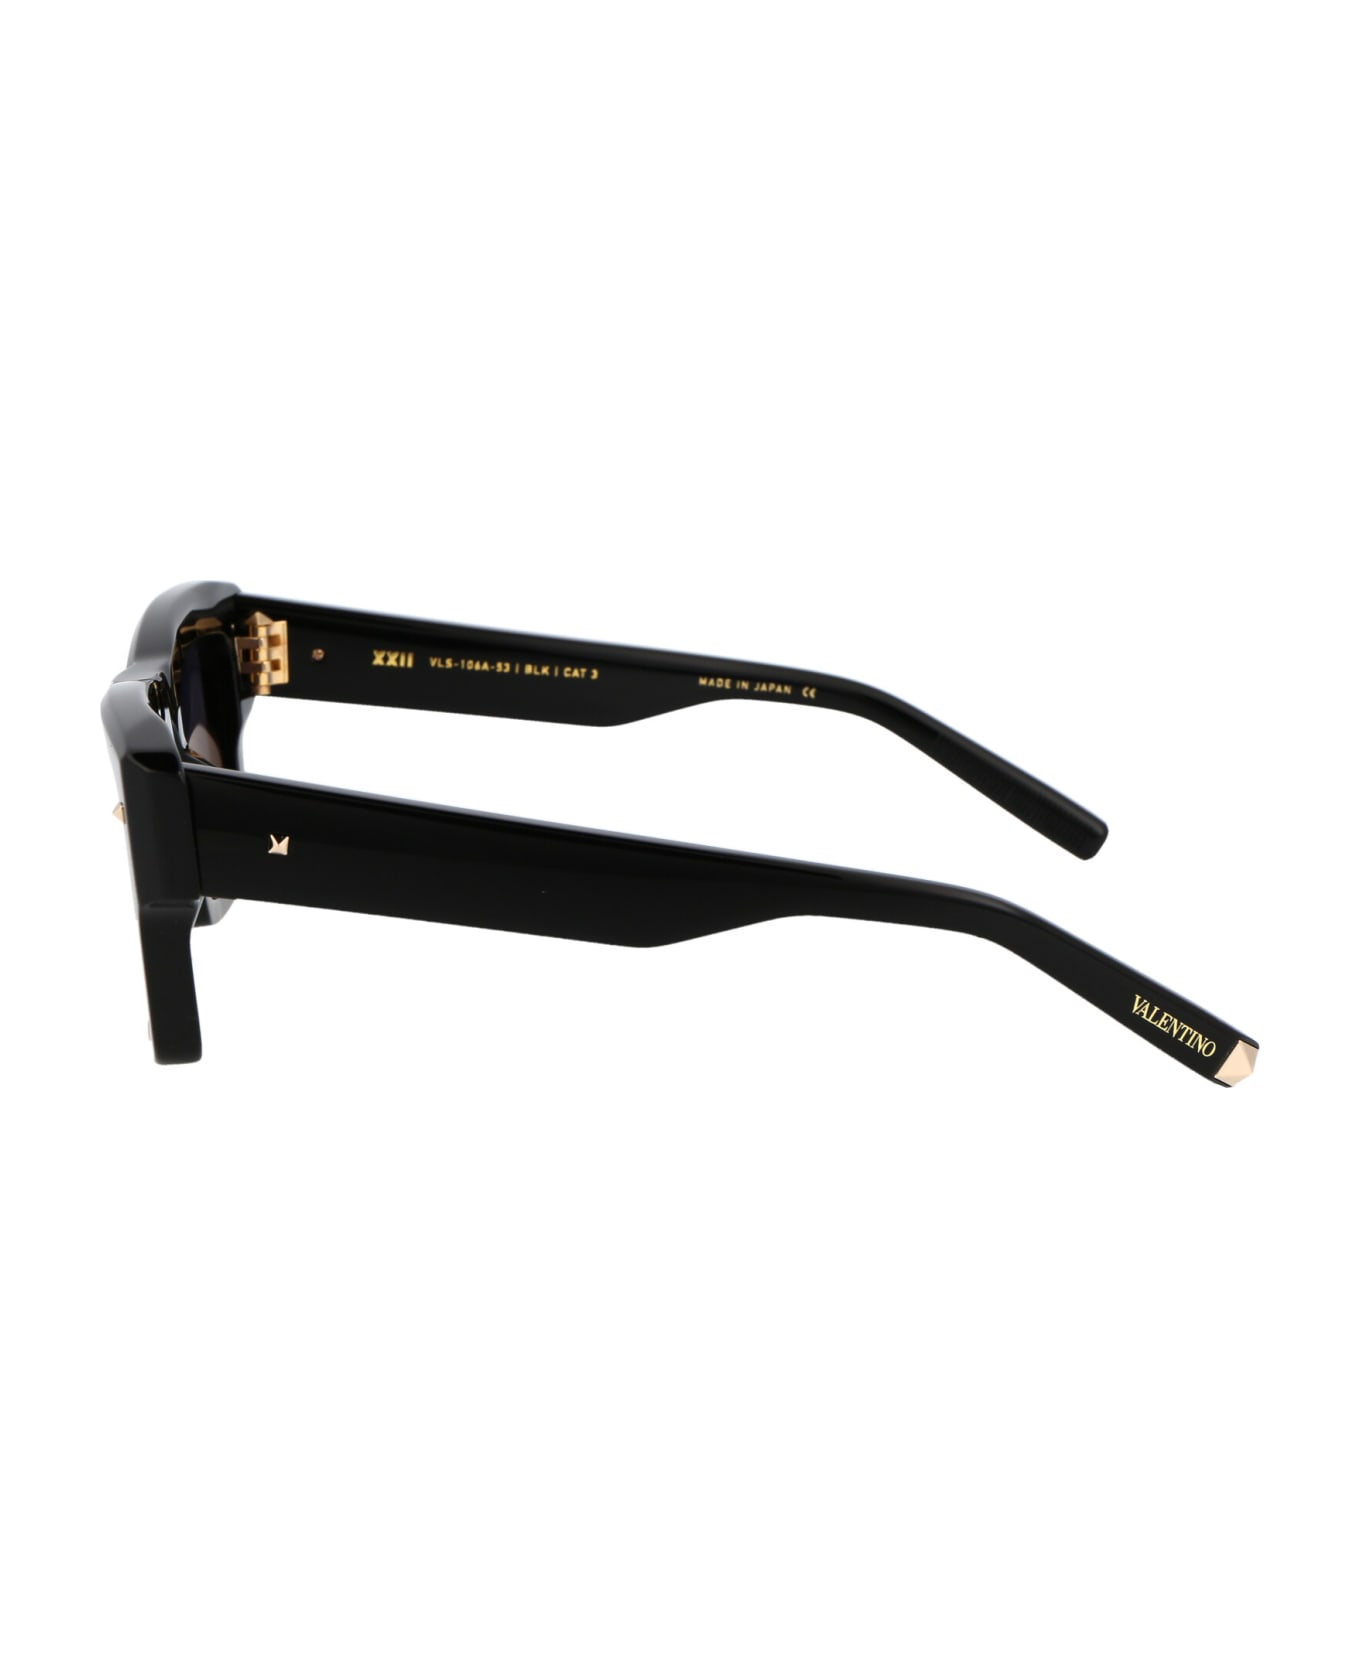 Valentino Eyewear Xxii Sunglasses - Black w/Dark Grey